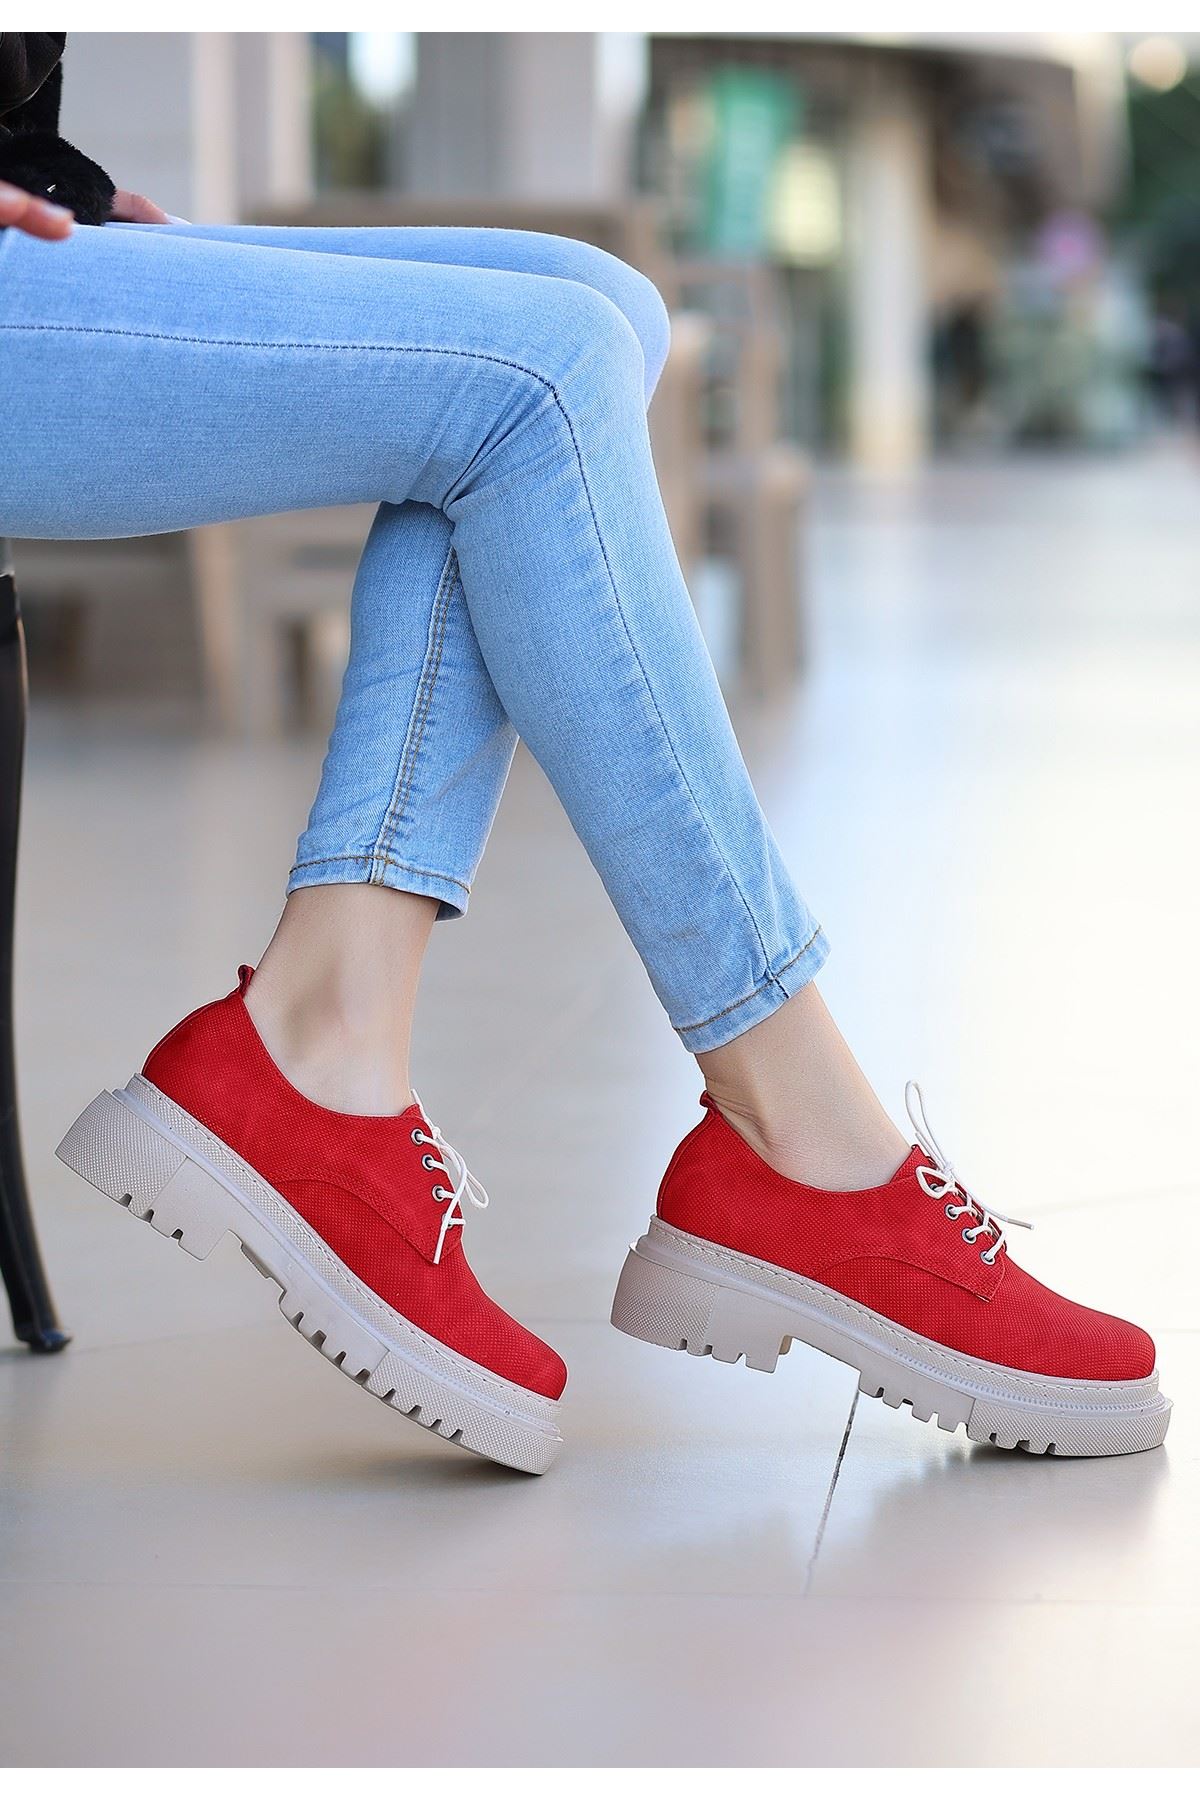 Teri Kırmızı Cilt Desenli Bağcıklı Ayakkabı